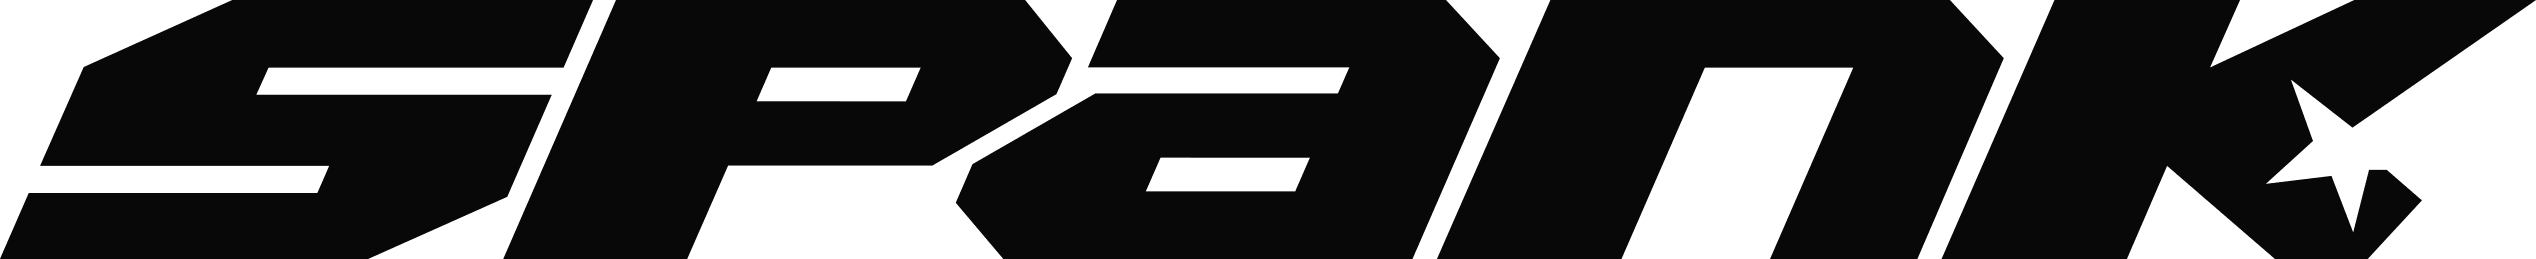 Spanks logo